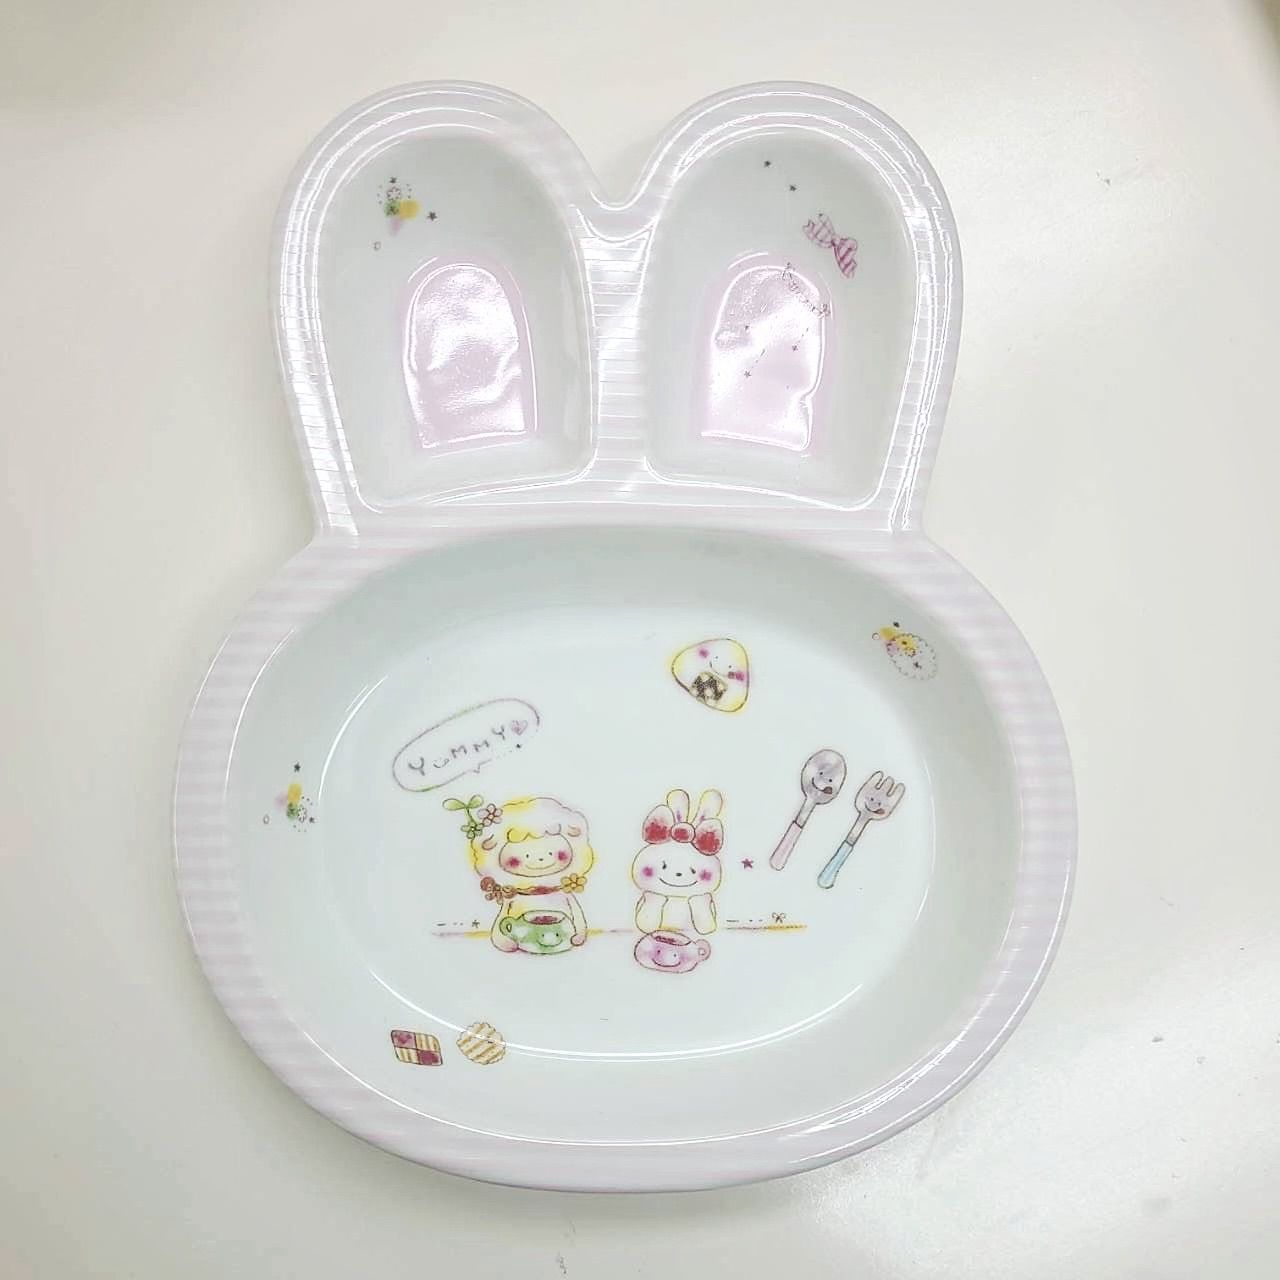 うさぎちゃん型 お皿 プレート 食器 プレゼント キッズ 陶器